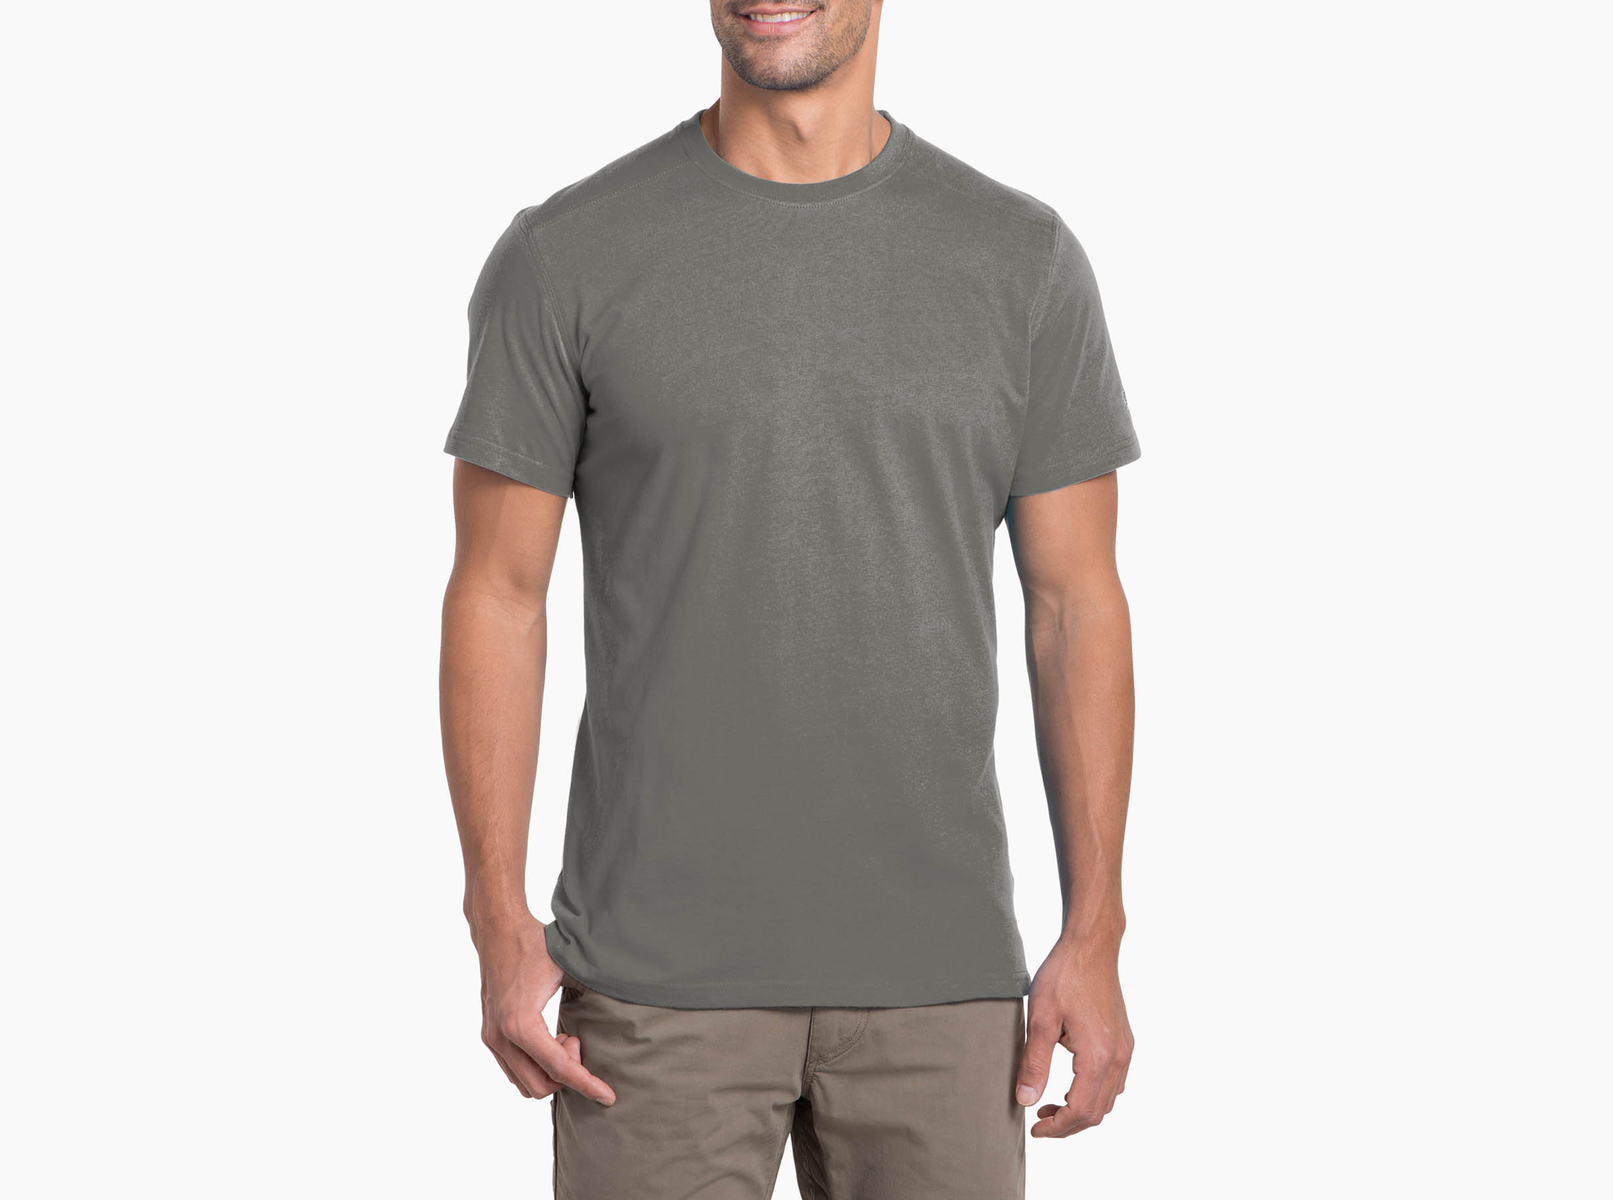 Kuhl Bravado Short Sleeve Shirt - Mens